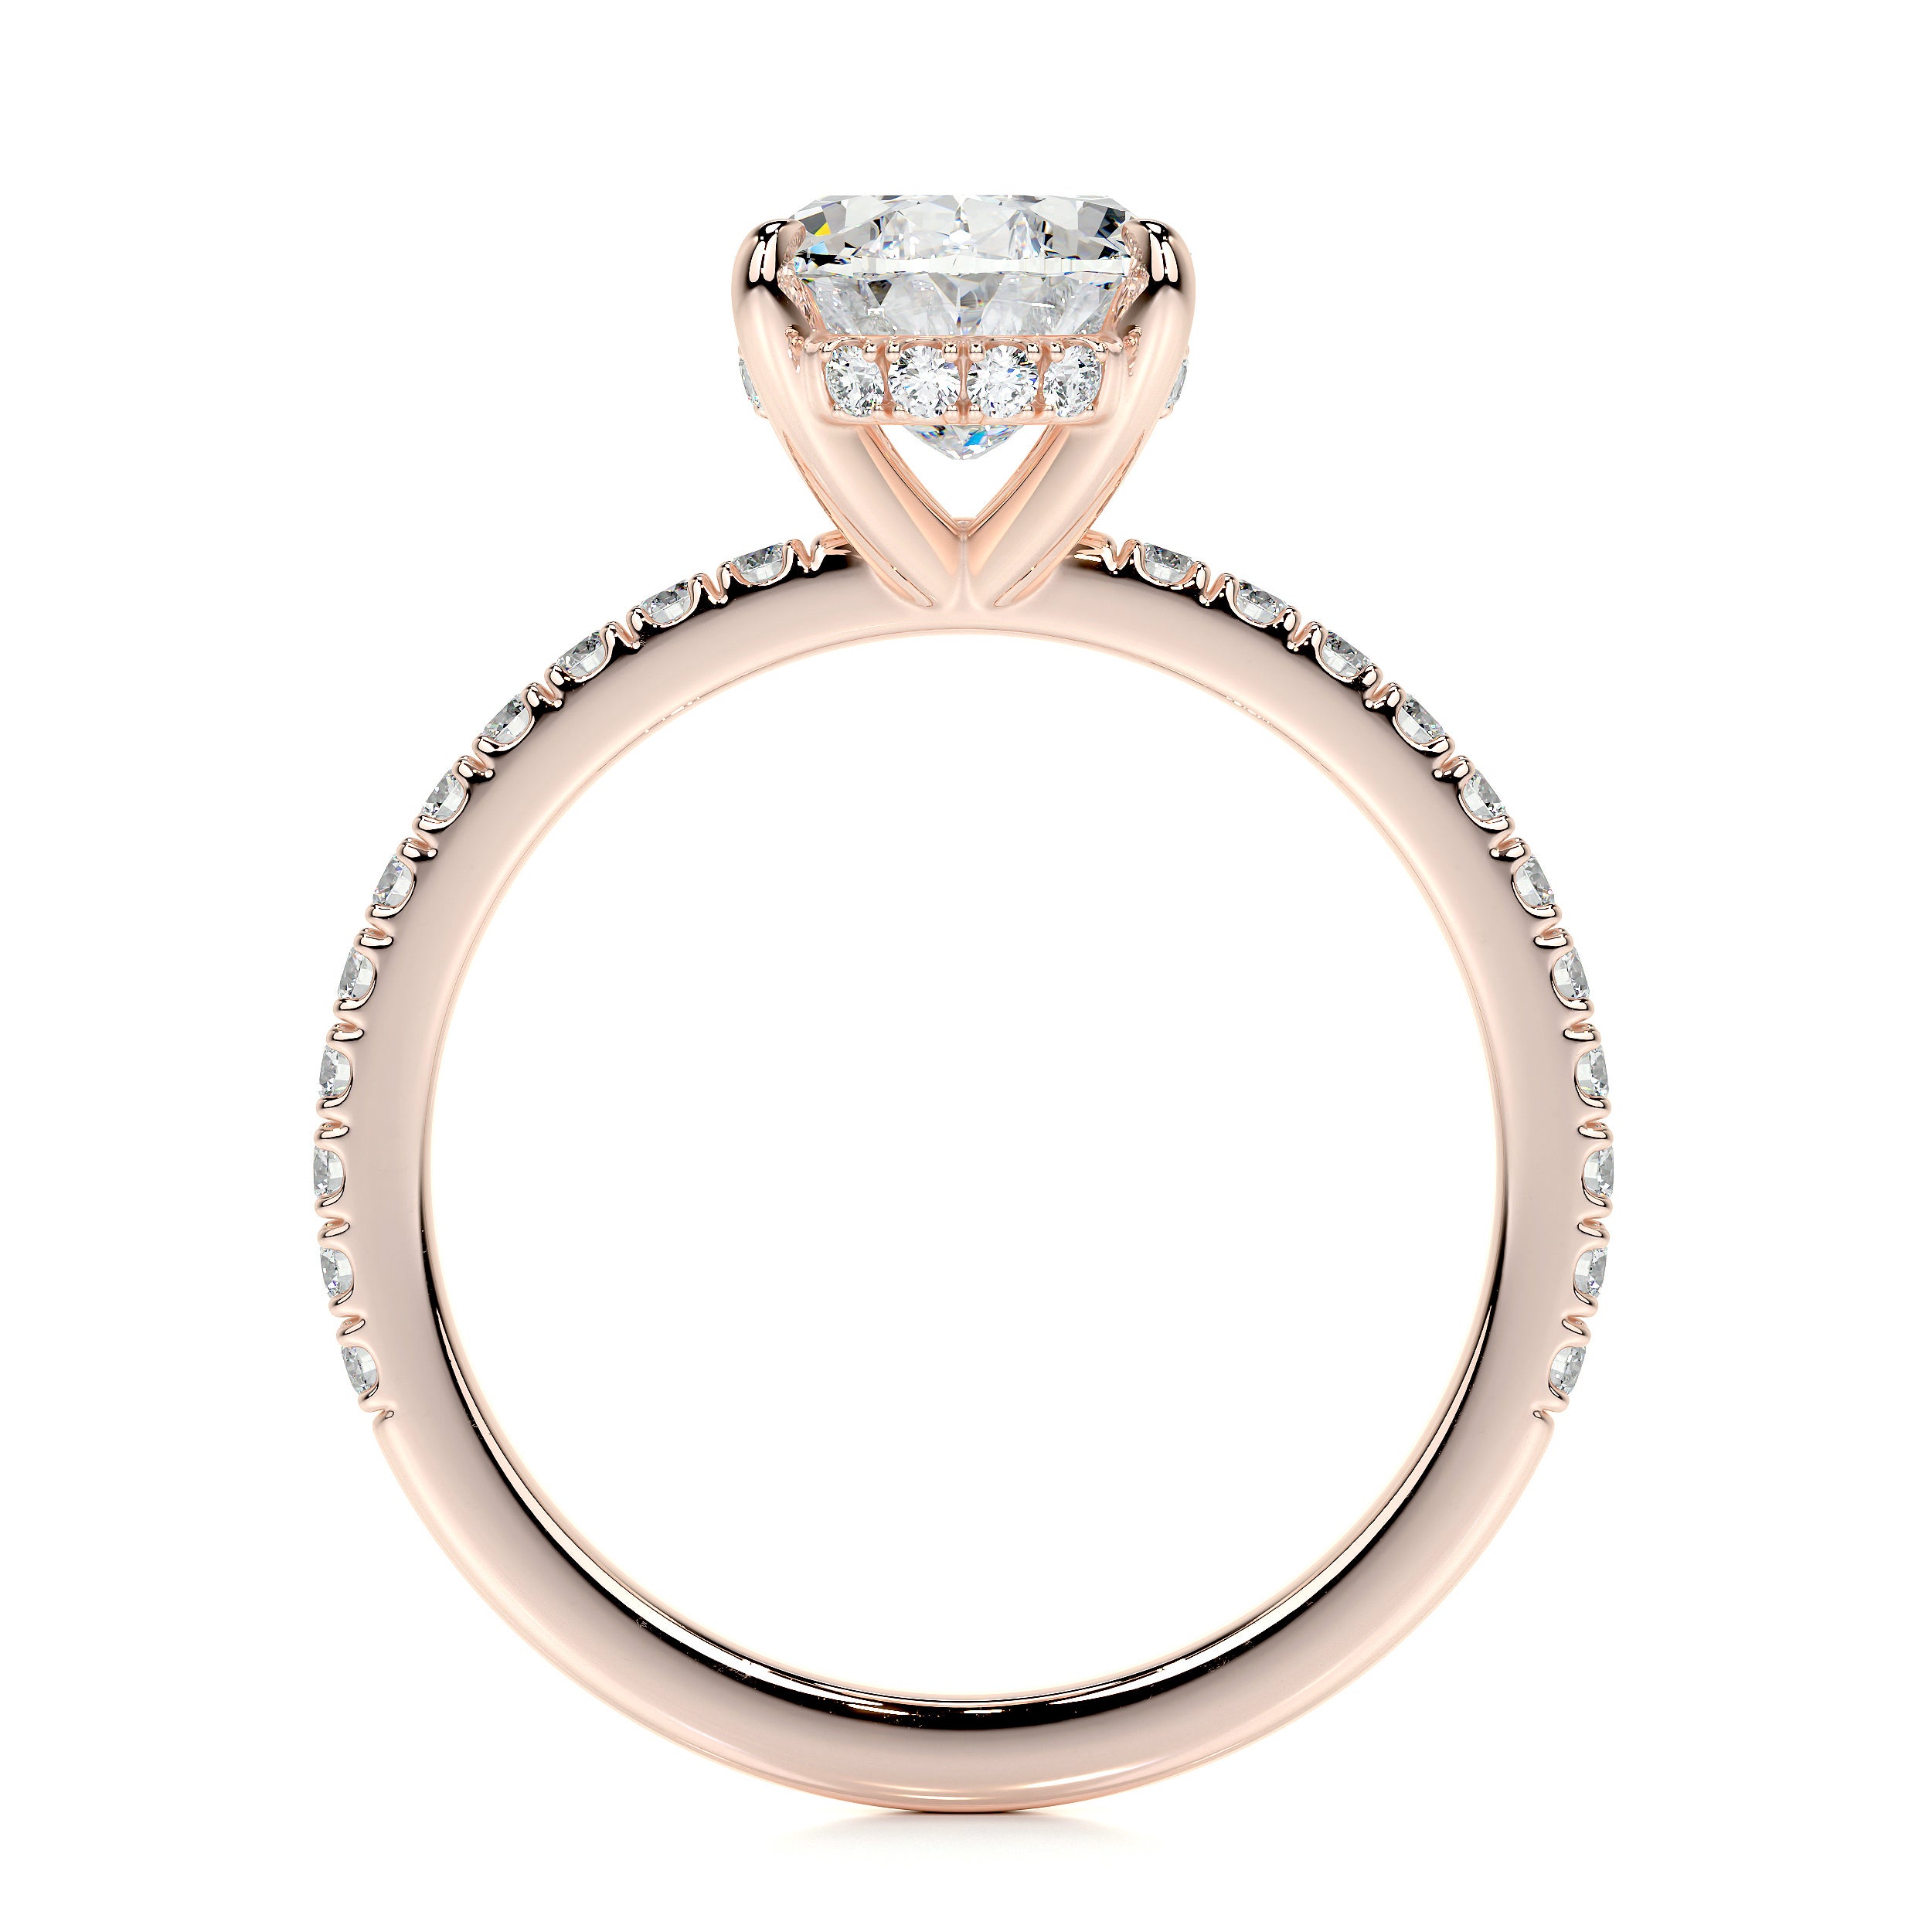 Lucy Lab Grown Diamond Ring   (2 Carat) -14K Rose Gold